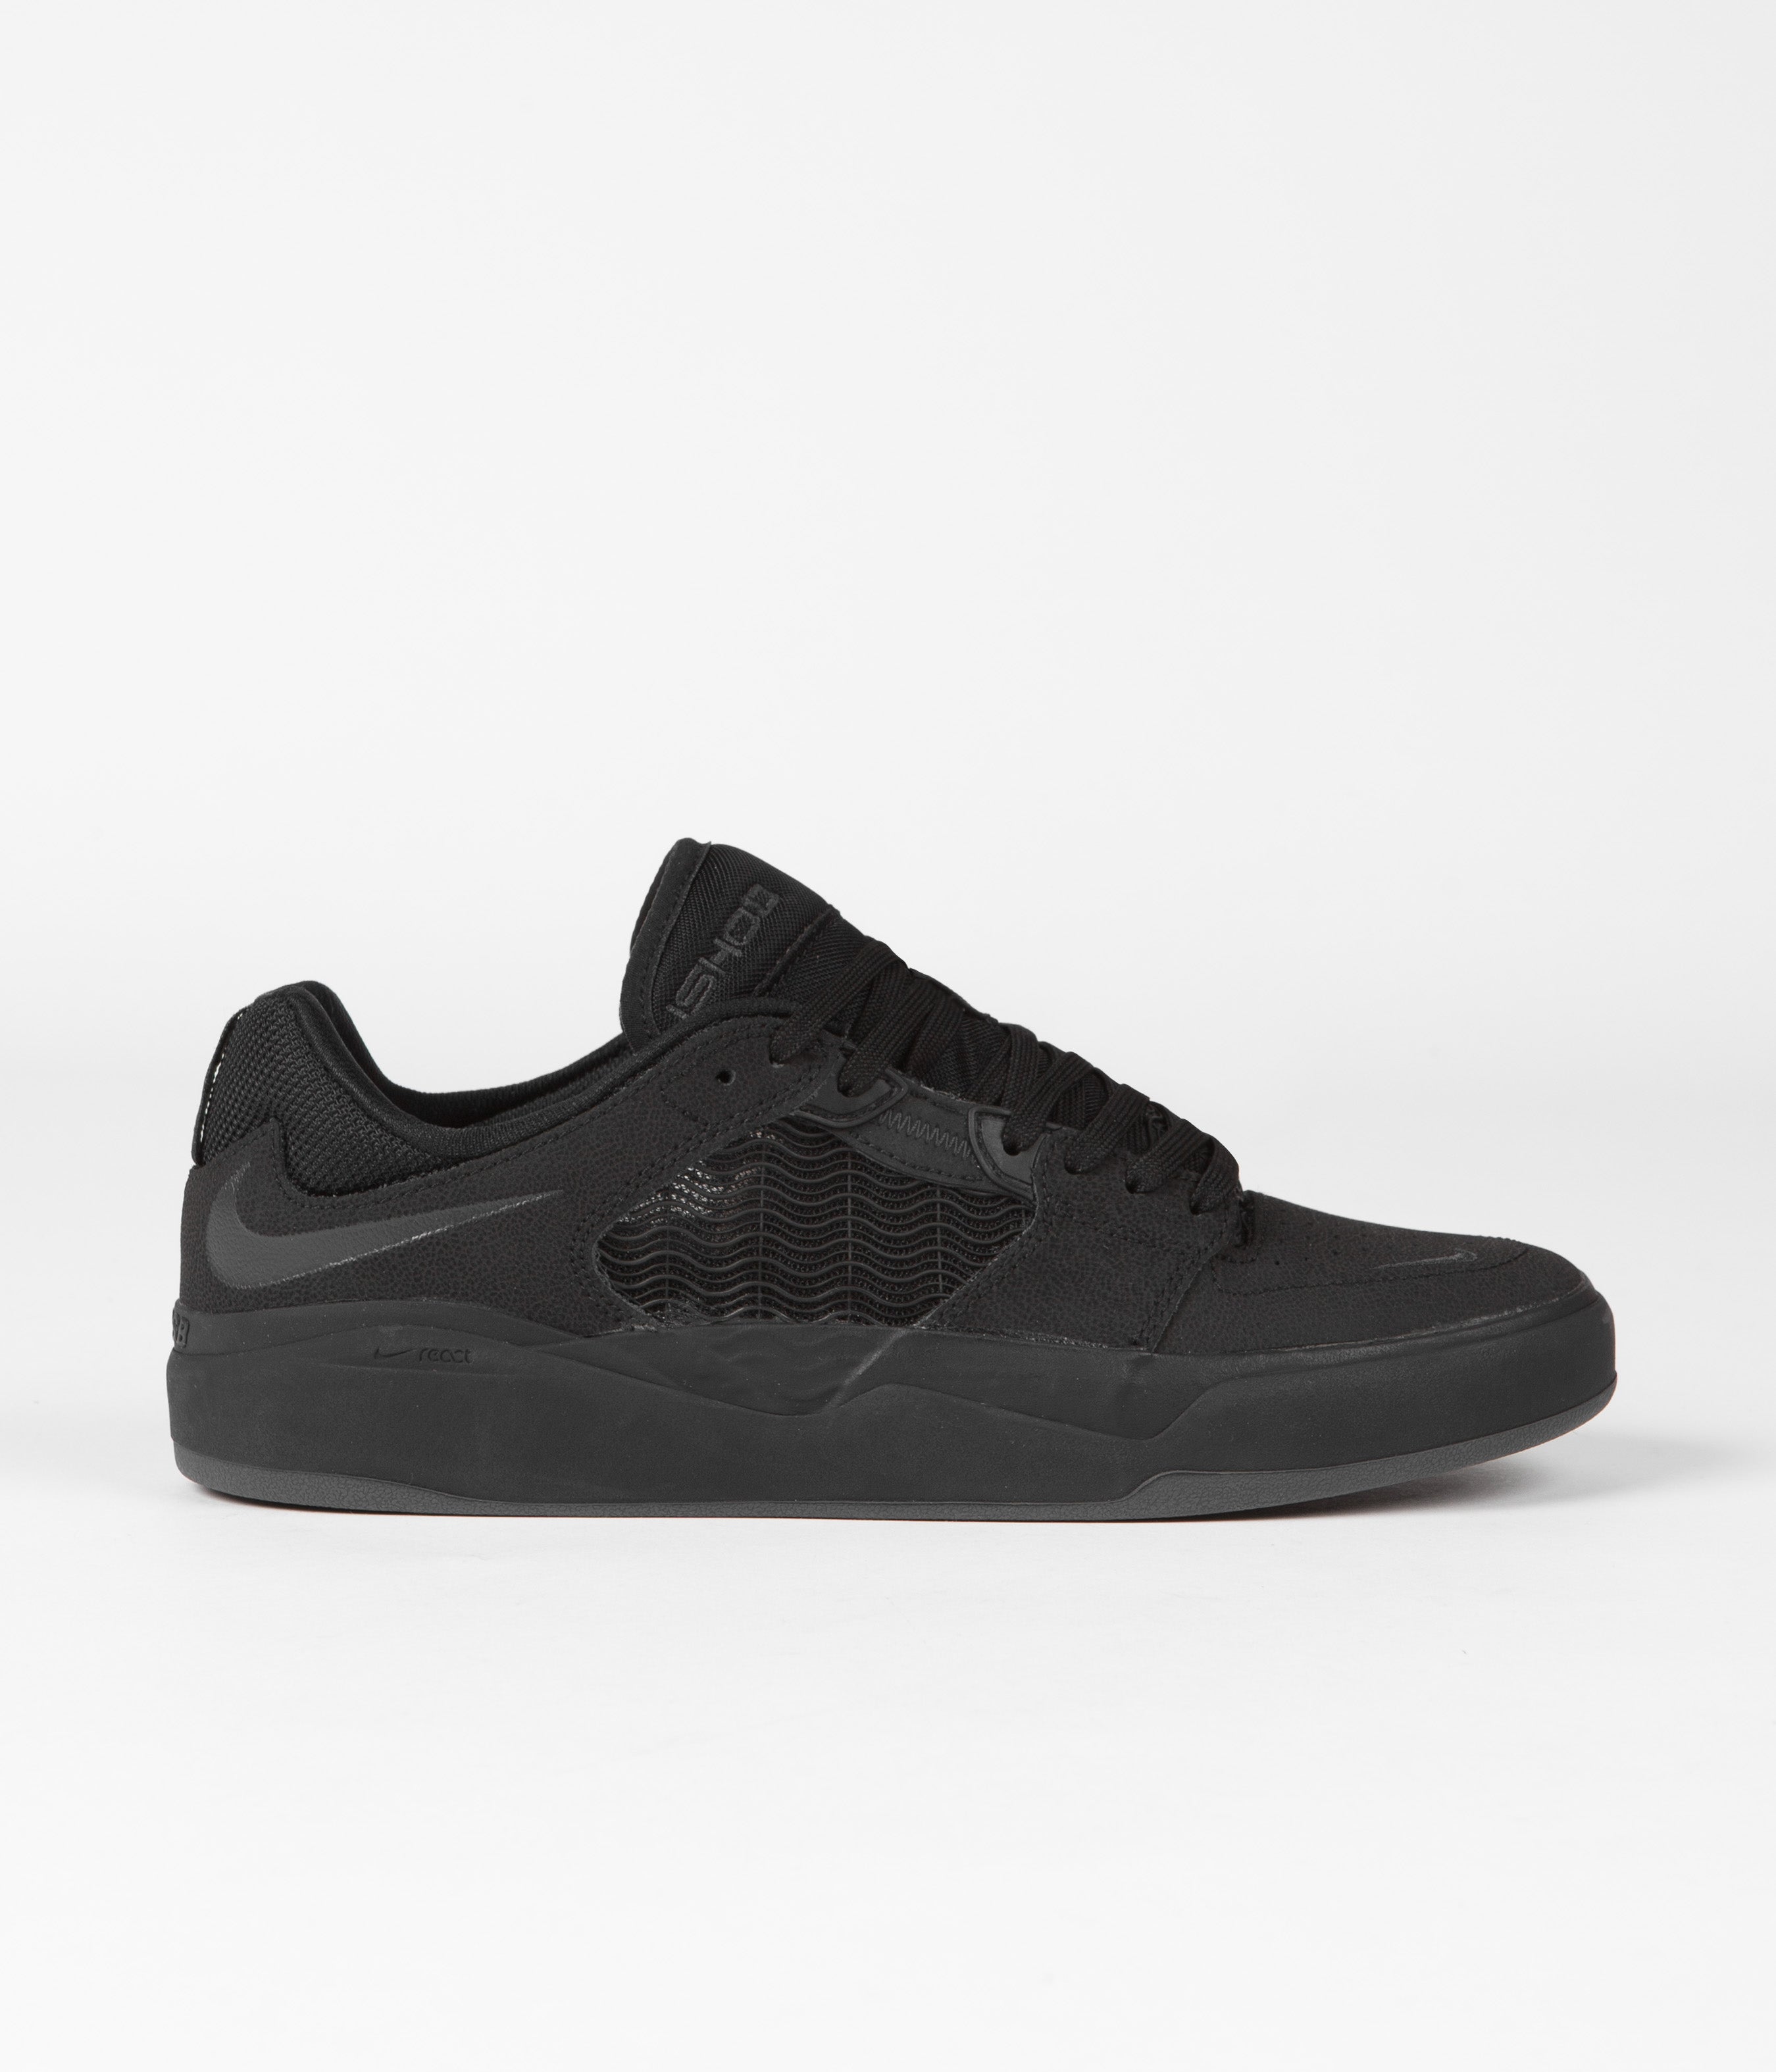 Nike SB Ishod Premium Shoes - Black / Black - Black - Black | Flatspot